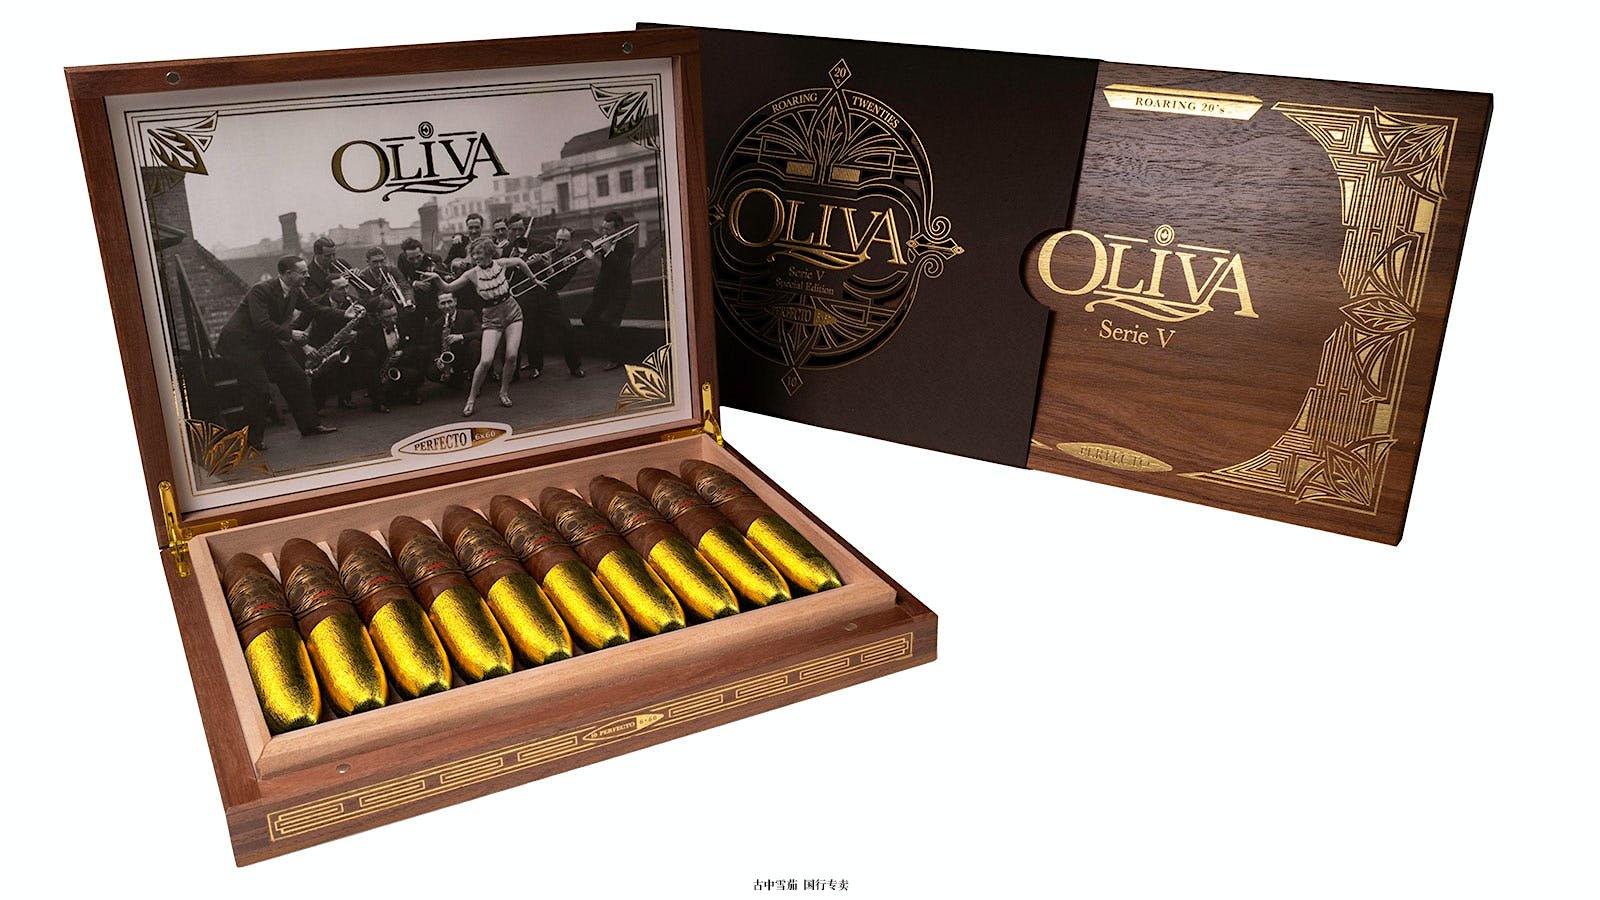 Oliva Serie V 咆哮的二十年代超级限量版